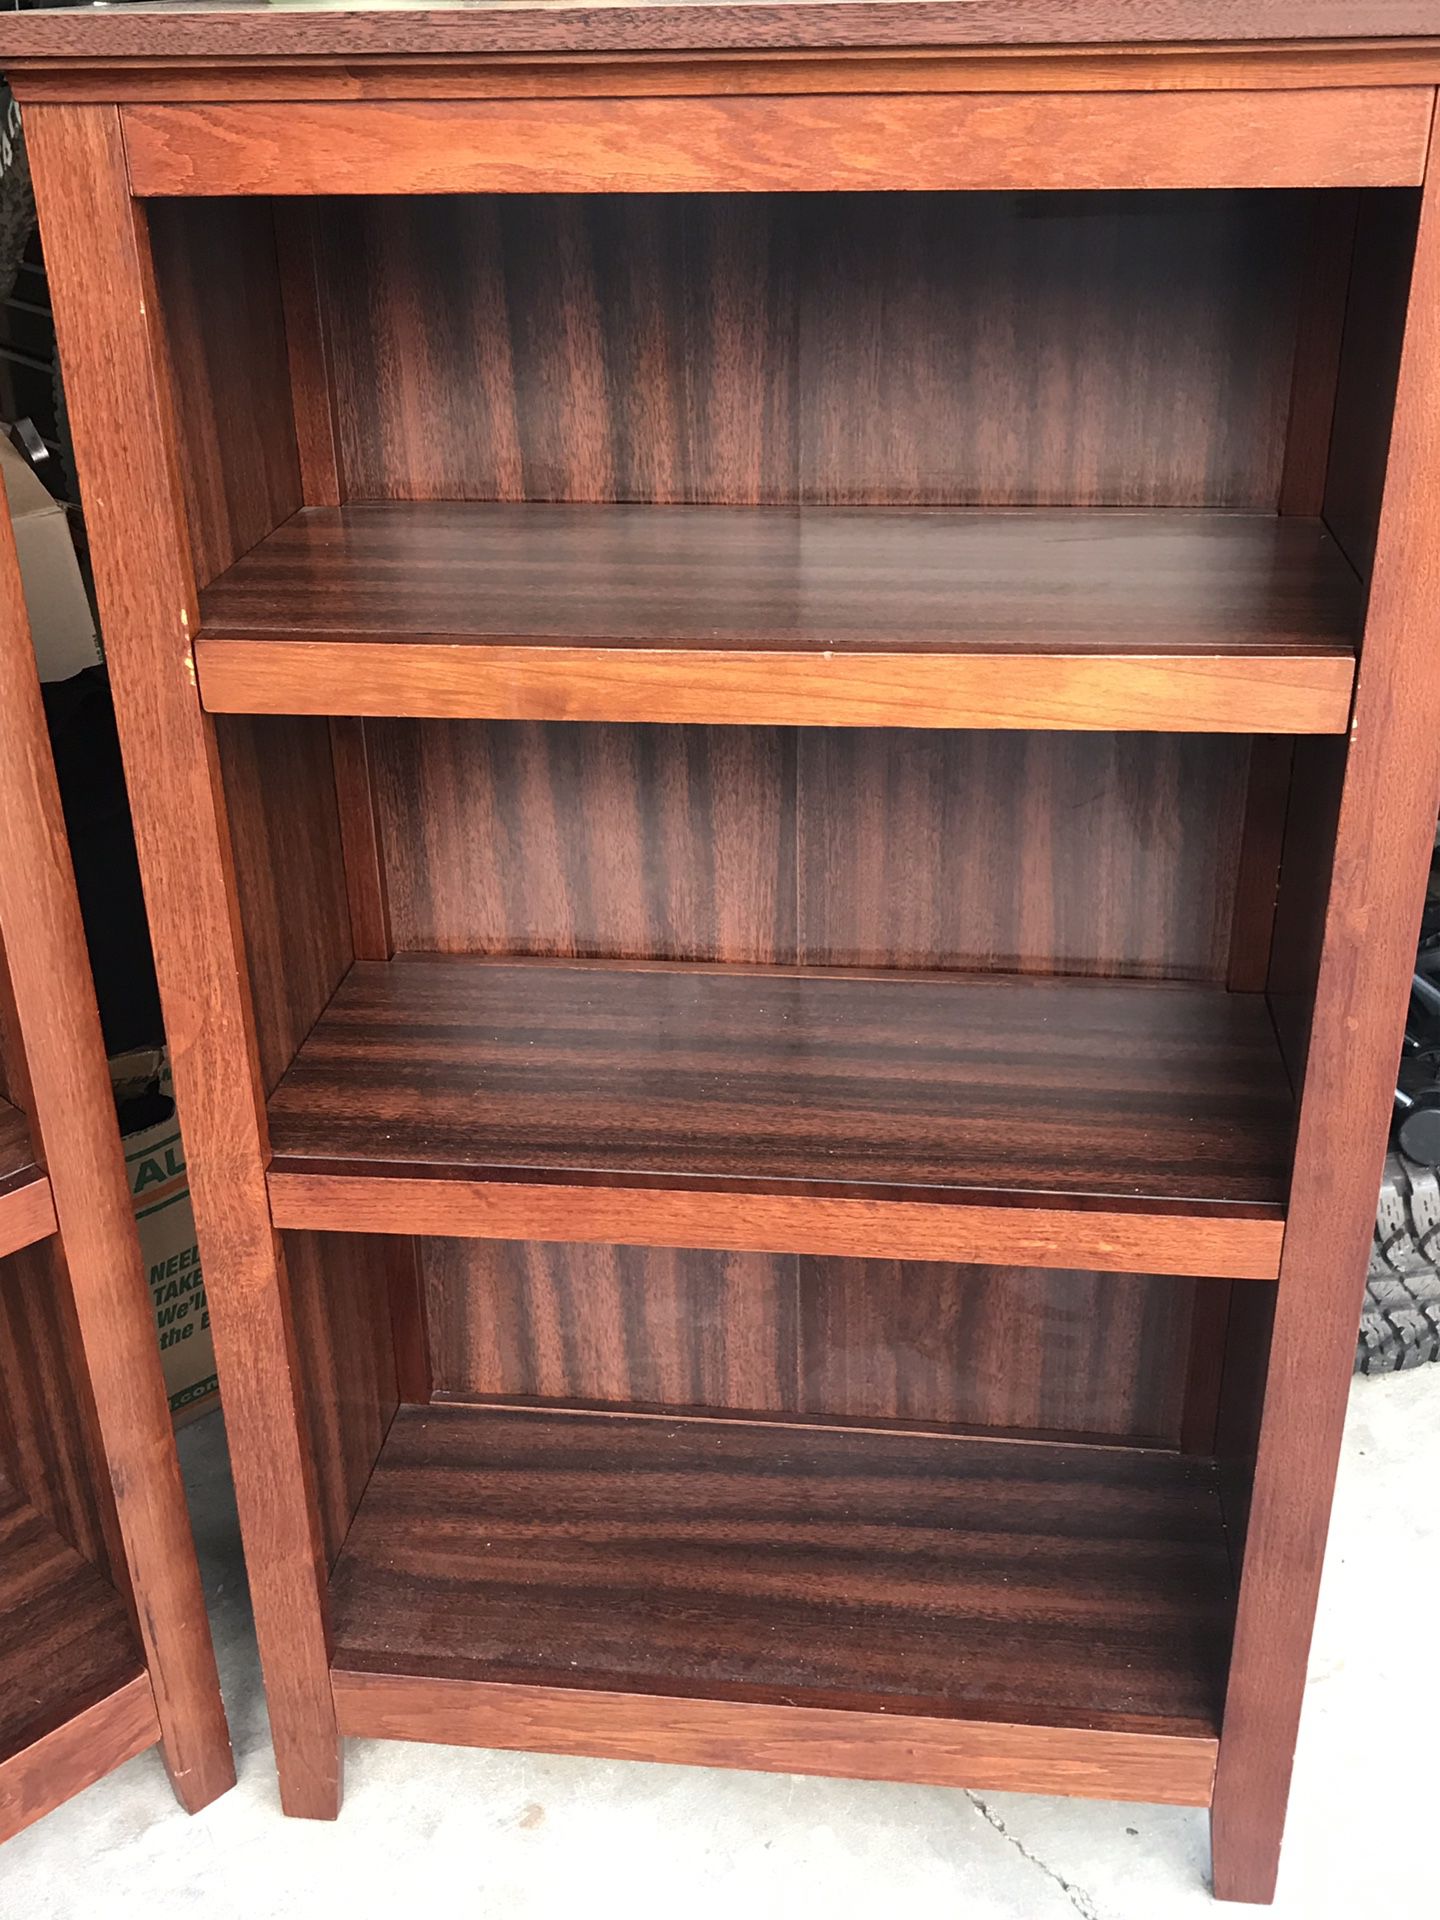 Book shelves, decorative shelves, storage